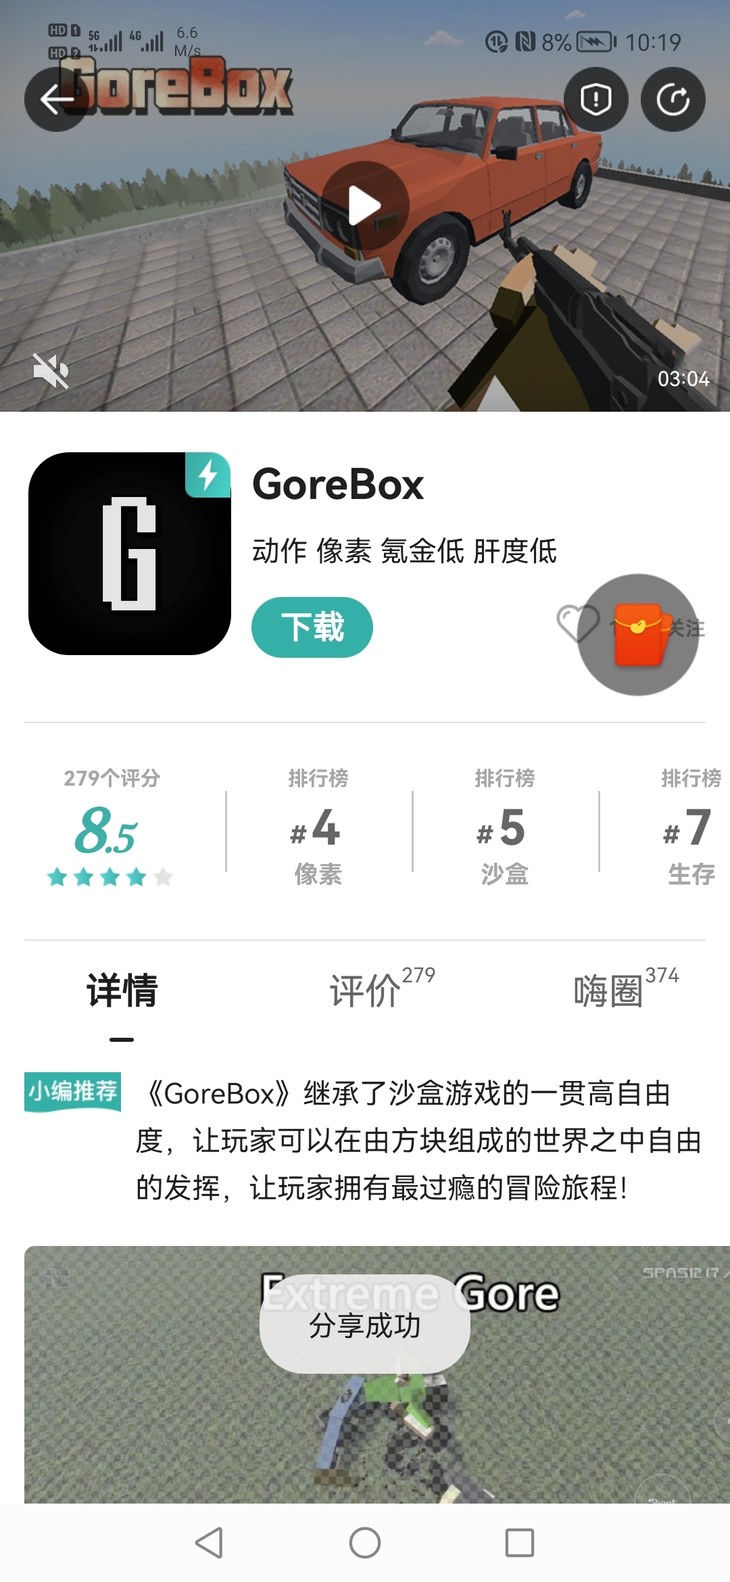 GoreBox嗨圈活动:我也不知道叫什么的活动(己截止)